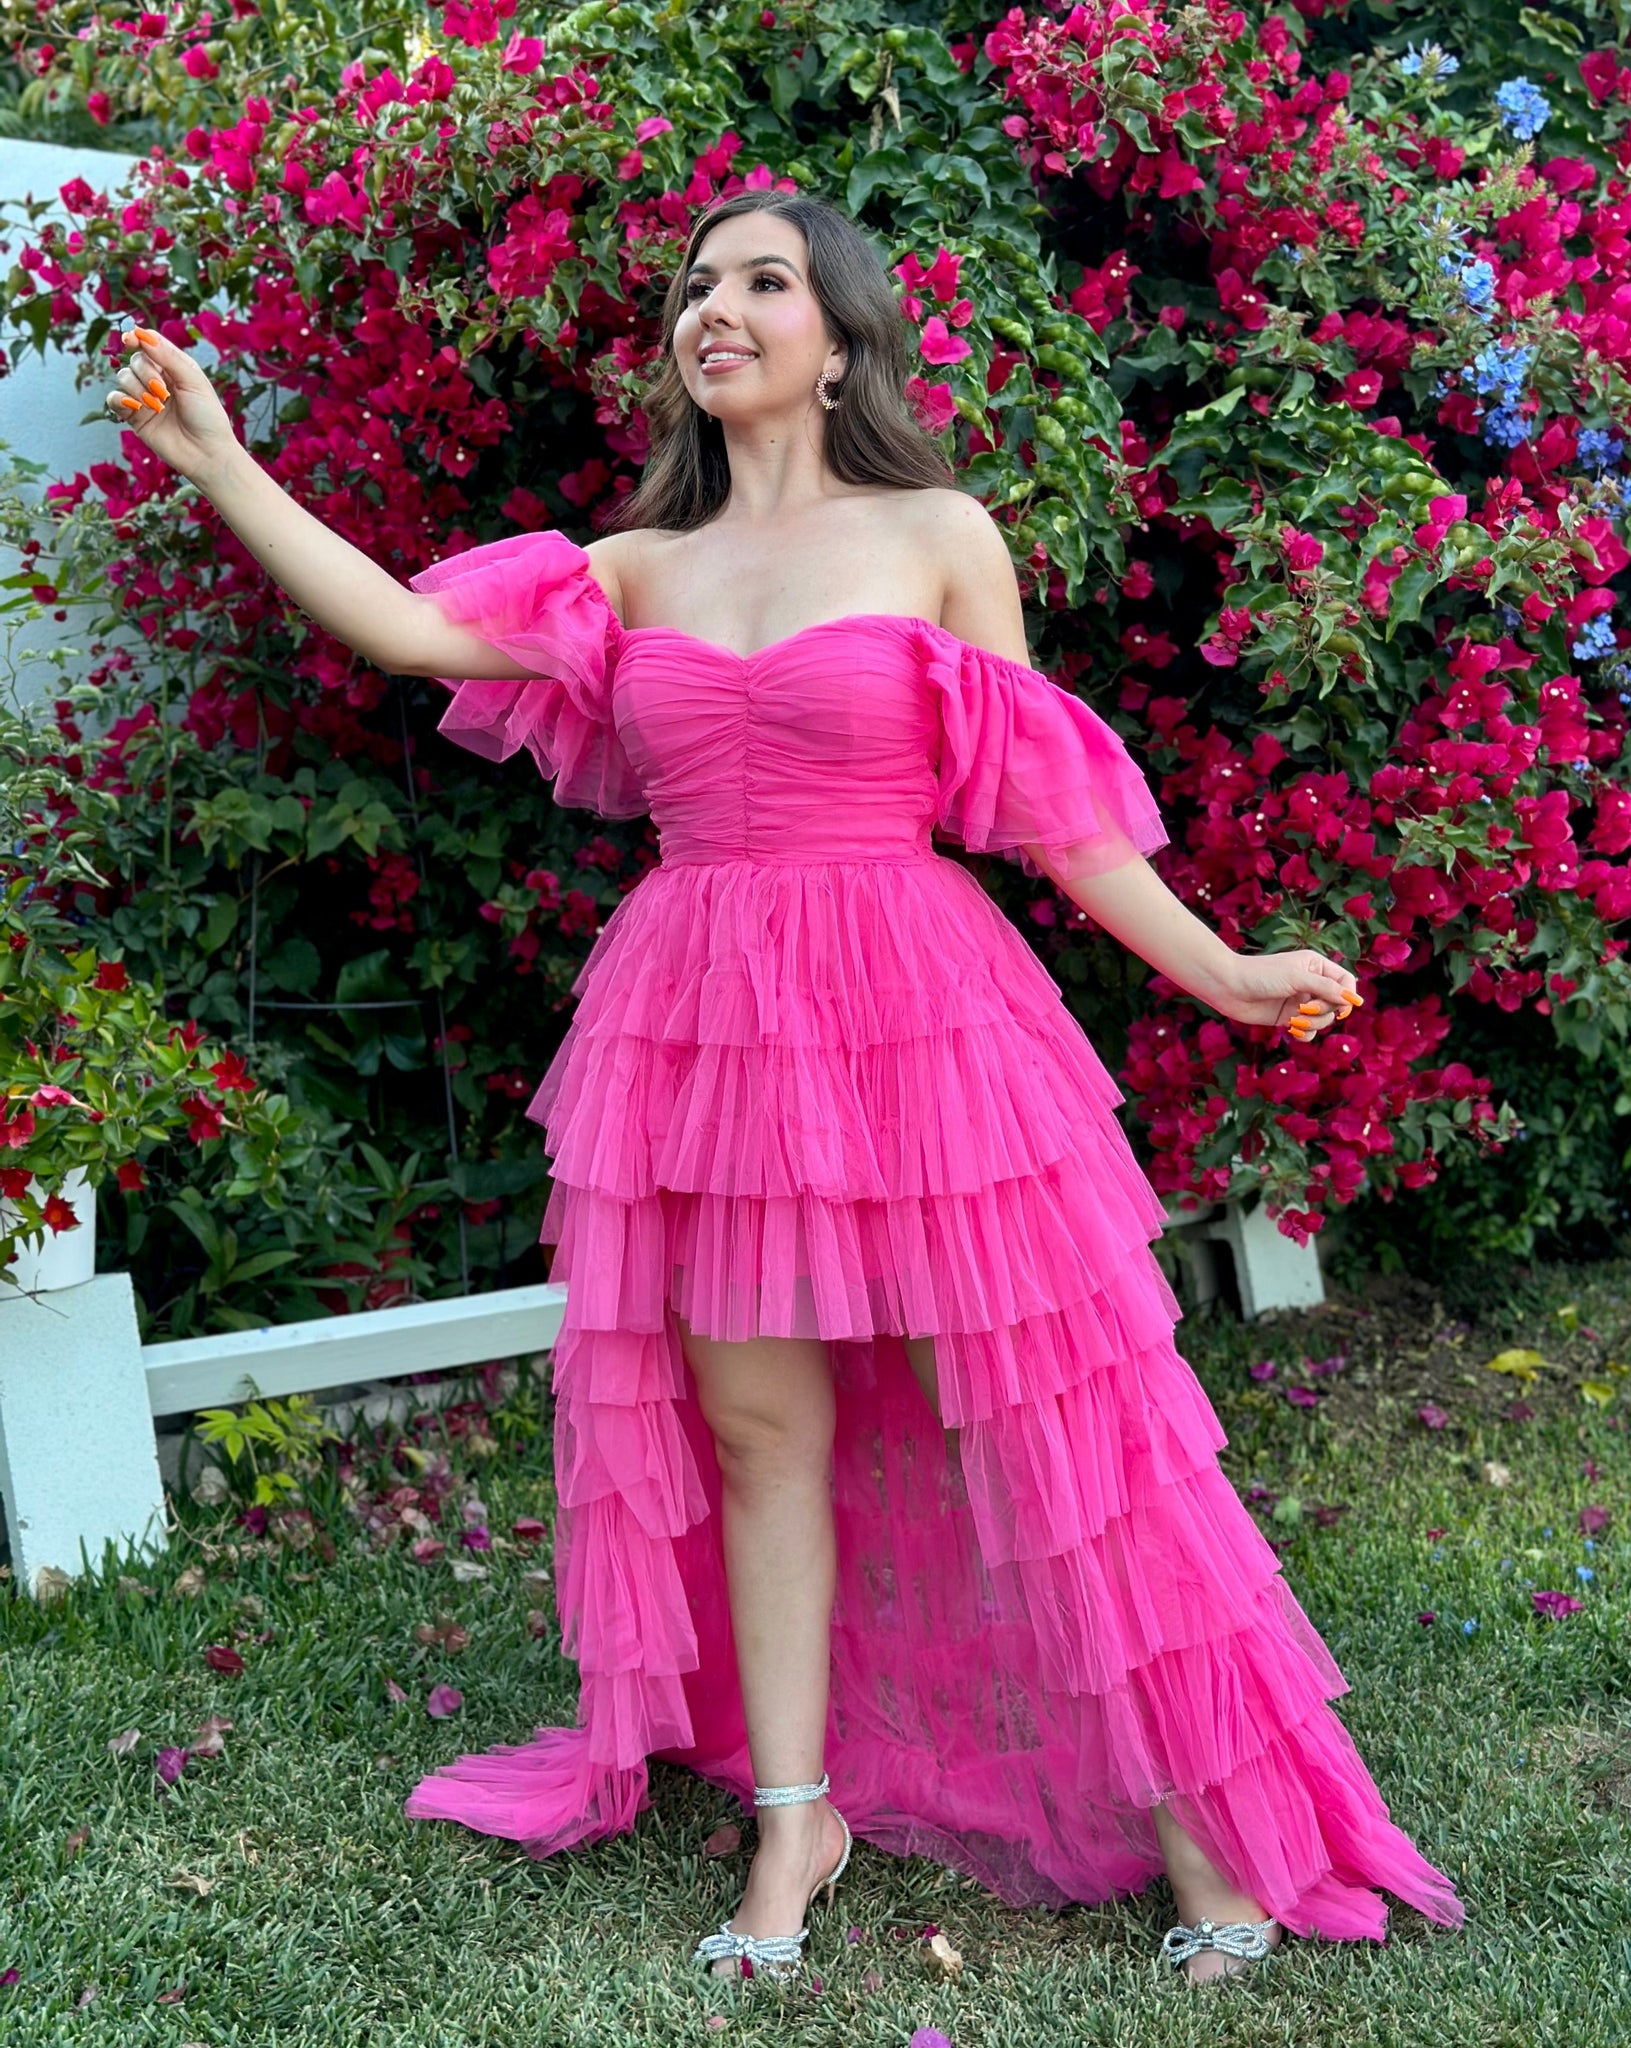 hot pink ruffle dress